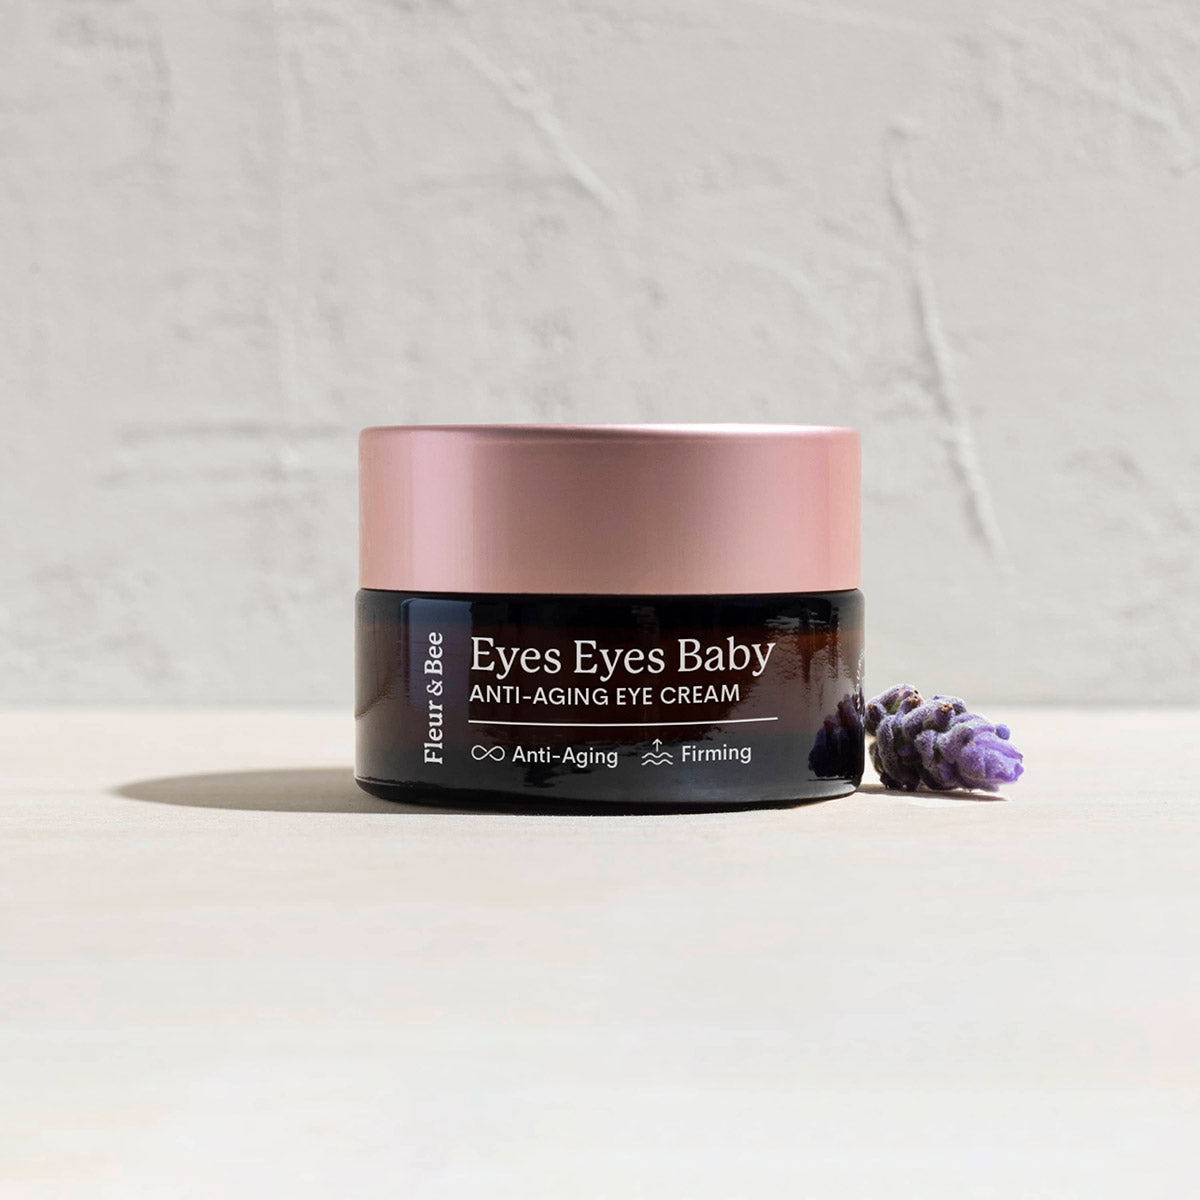 Best selling eye cream Eyes Eyes Baby by Fleur & Bee